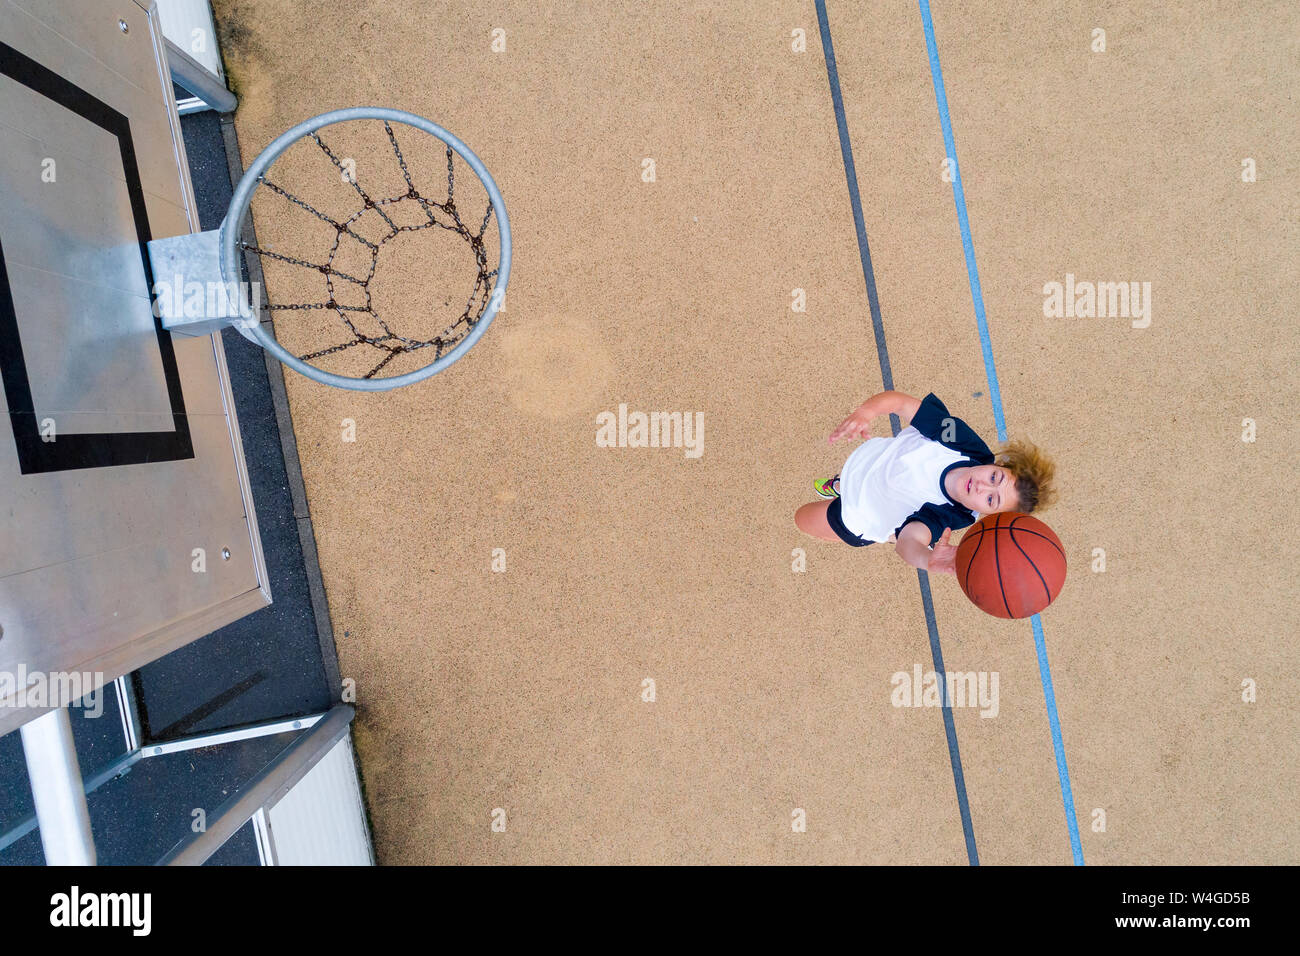 Jeune femme jouant au basket-ball, vue du dessus Banque D'Images